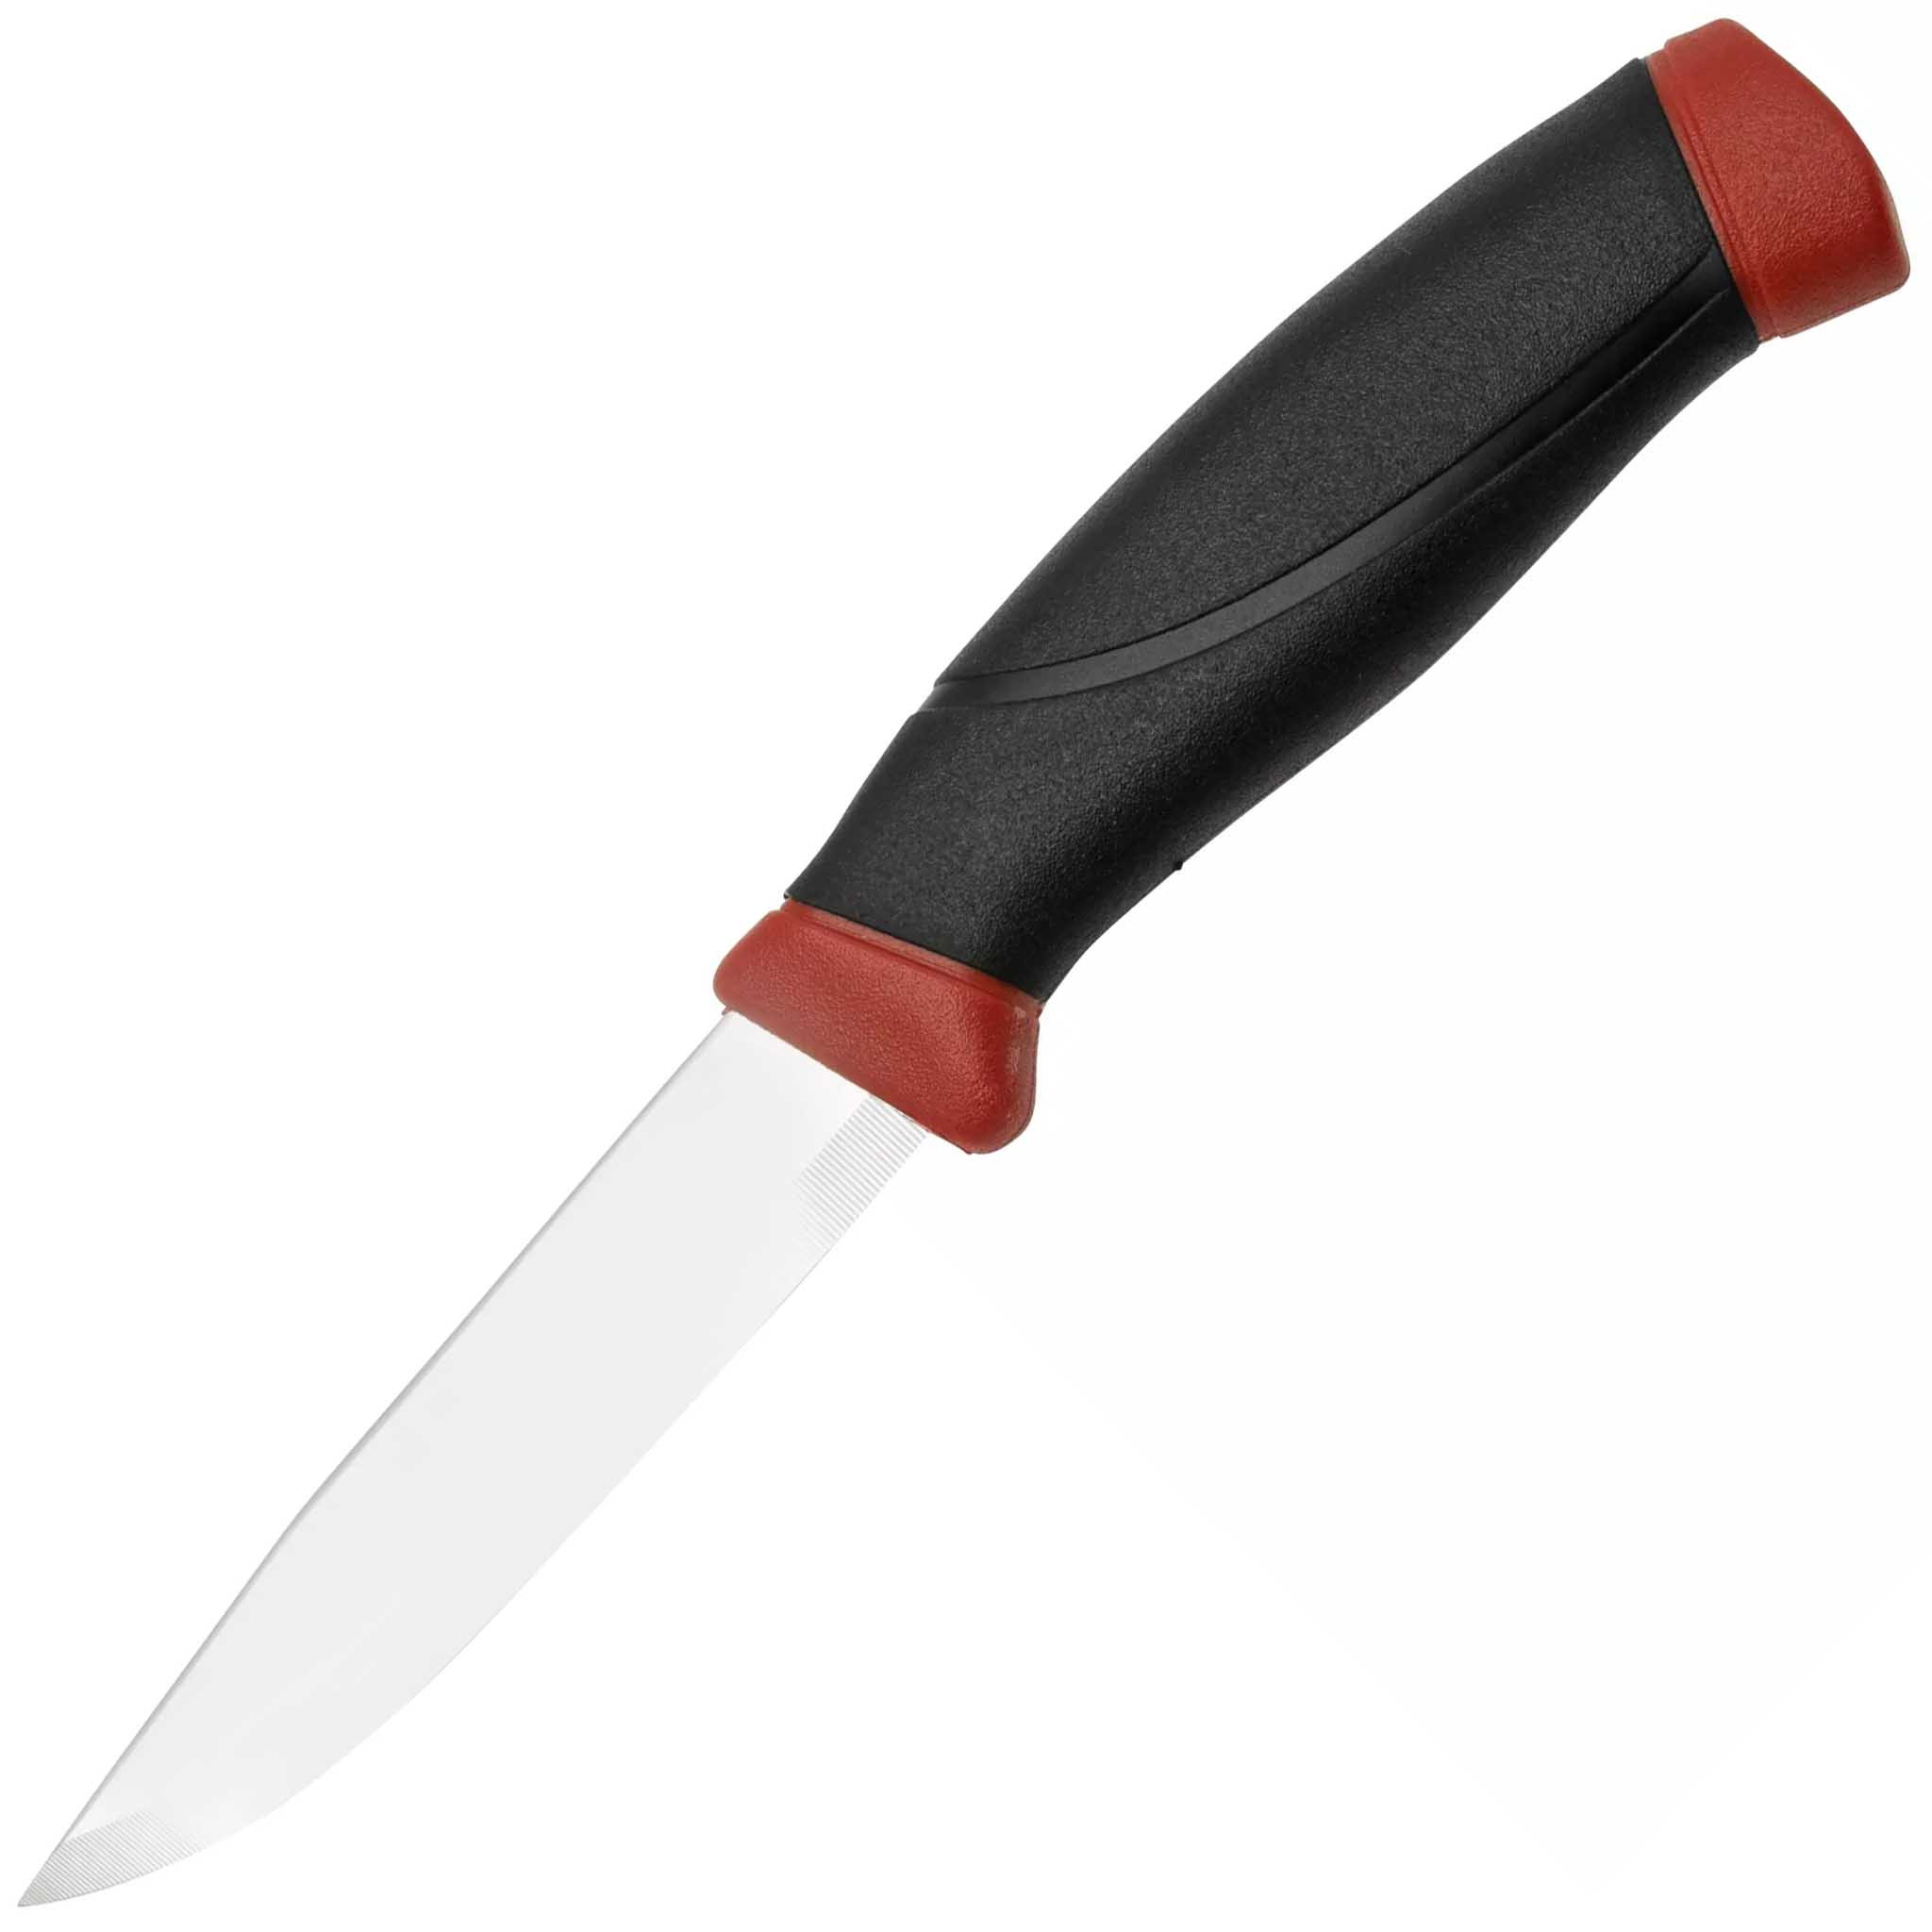 Нож с фиксированным лезвием Morakniv Companion, сталь Sandvik 12C27, рукоять резина, Dala red, Mora, Ножи Mora Companion